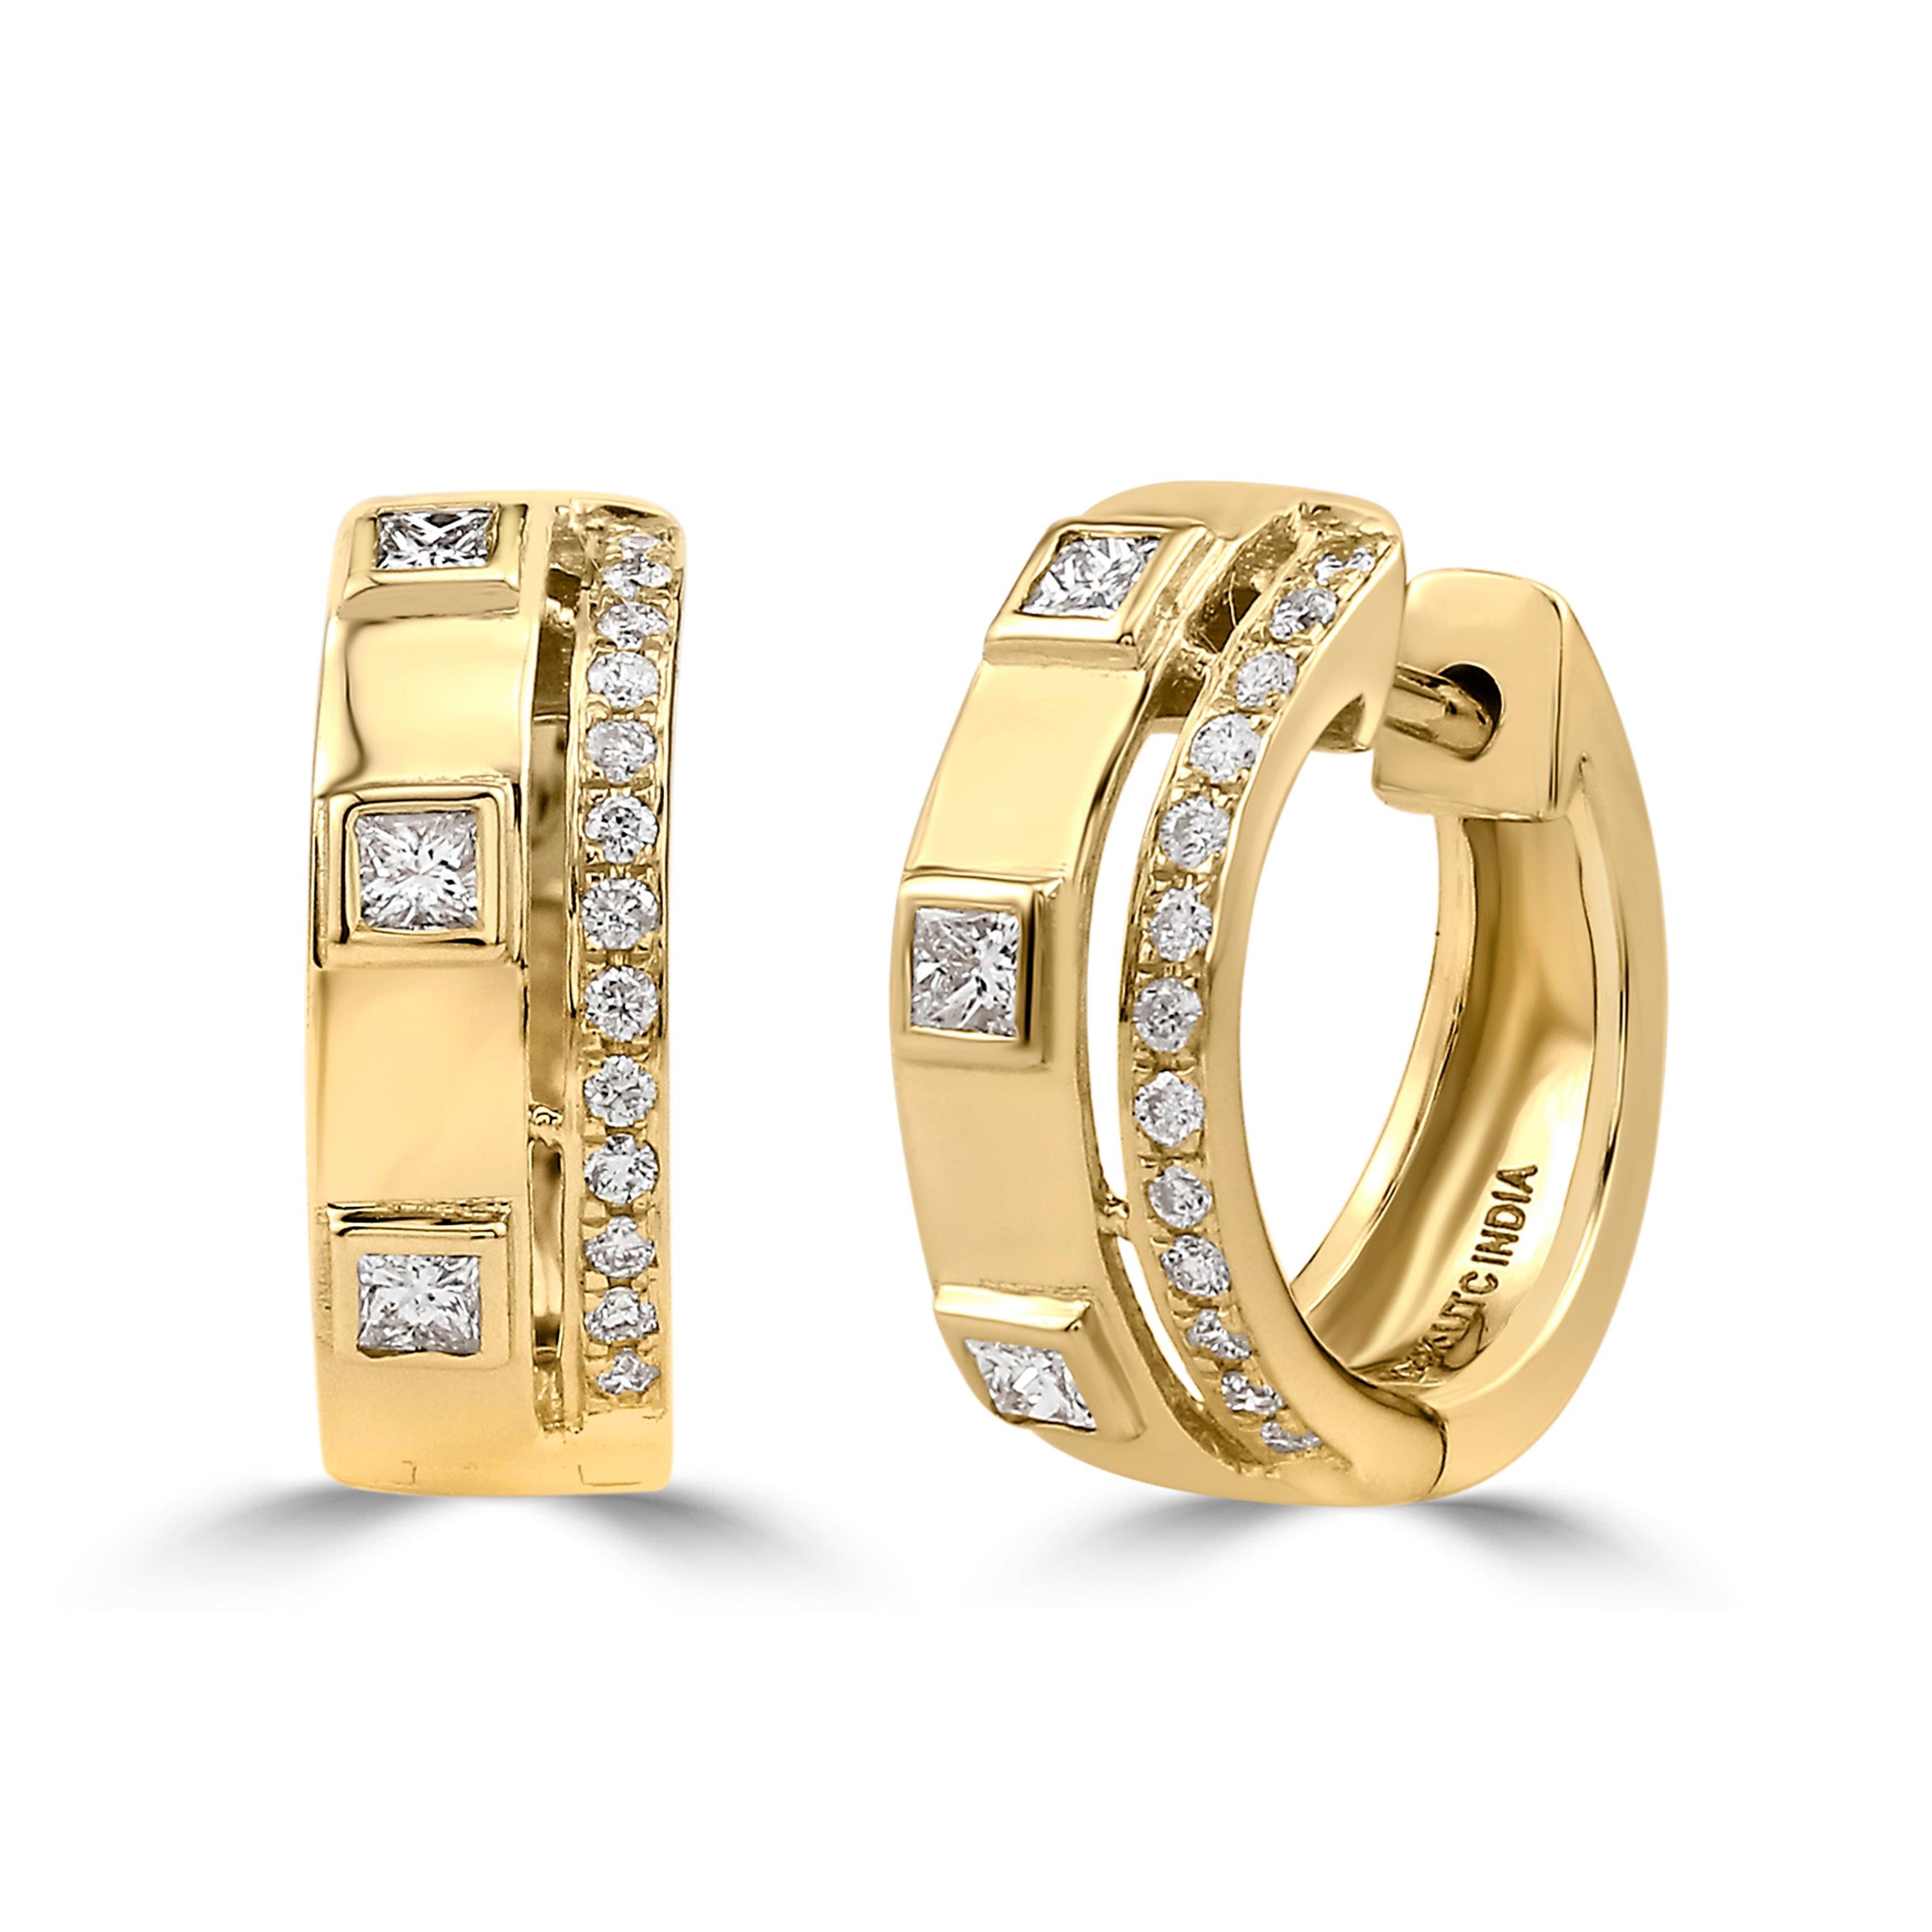 Les diamants ronds de 0,31 carat à taille unique et les diamants carrés à taille princesse sertis avec précision dans de l'or jaune 14K par Luxle donnent à ces boucles d'oreilles cerclées un aspect étincelant. Un verrouillage facile et sûr est